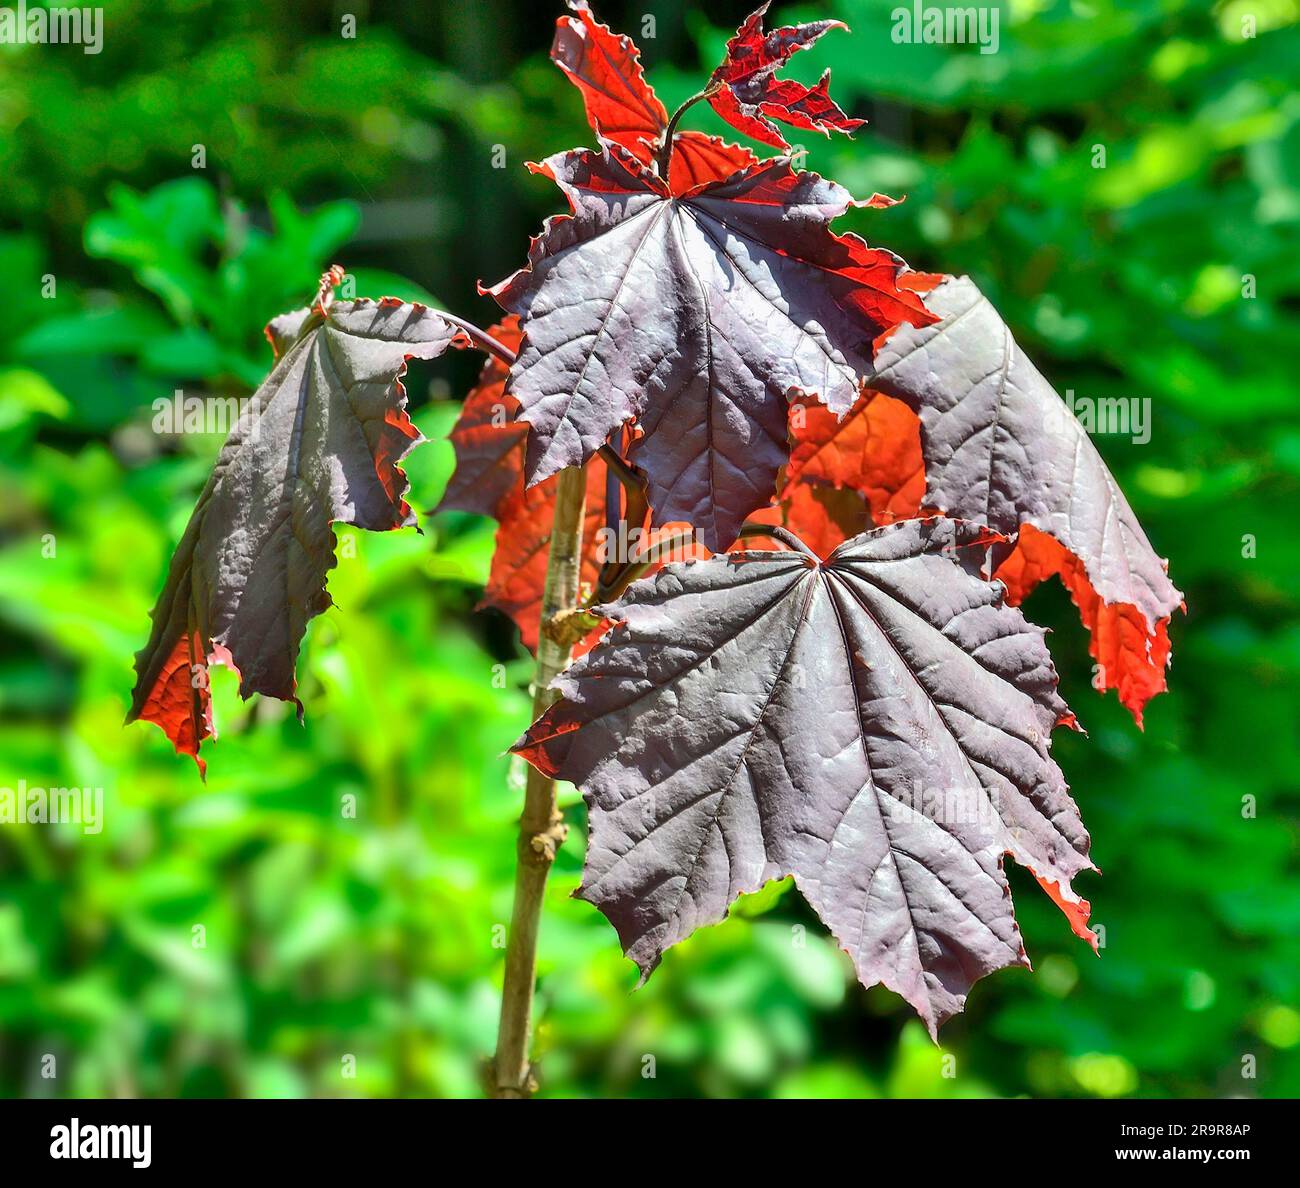 Zweig von Marple oder Acer Platanoides Royal Red mit roten Blättern aus nächster Nähe. Schöner dekorativer Baum für Park- oder Gartenlandschaft. Marmorbaum w Stockfoto